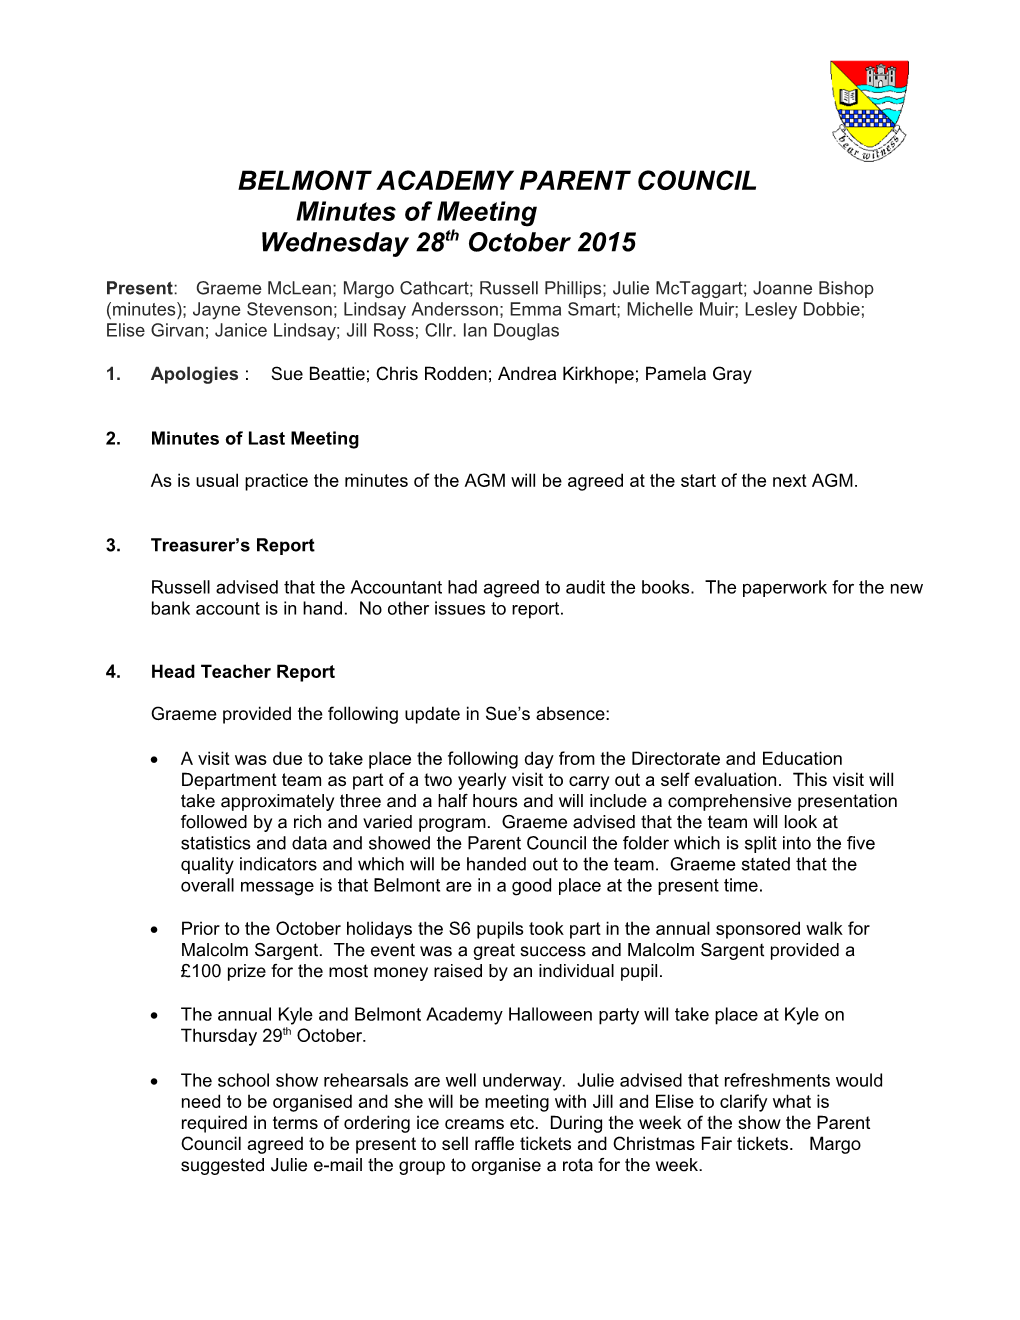 Belmont Academy Parent Council